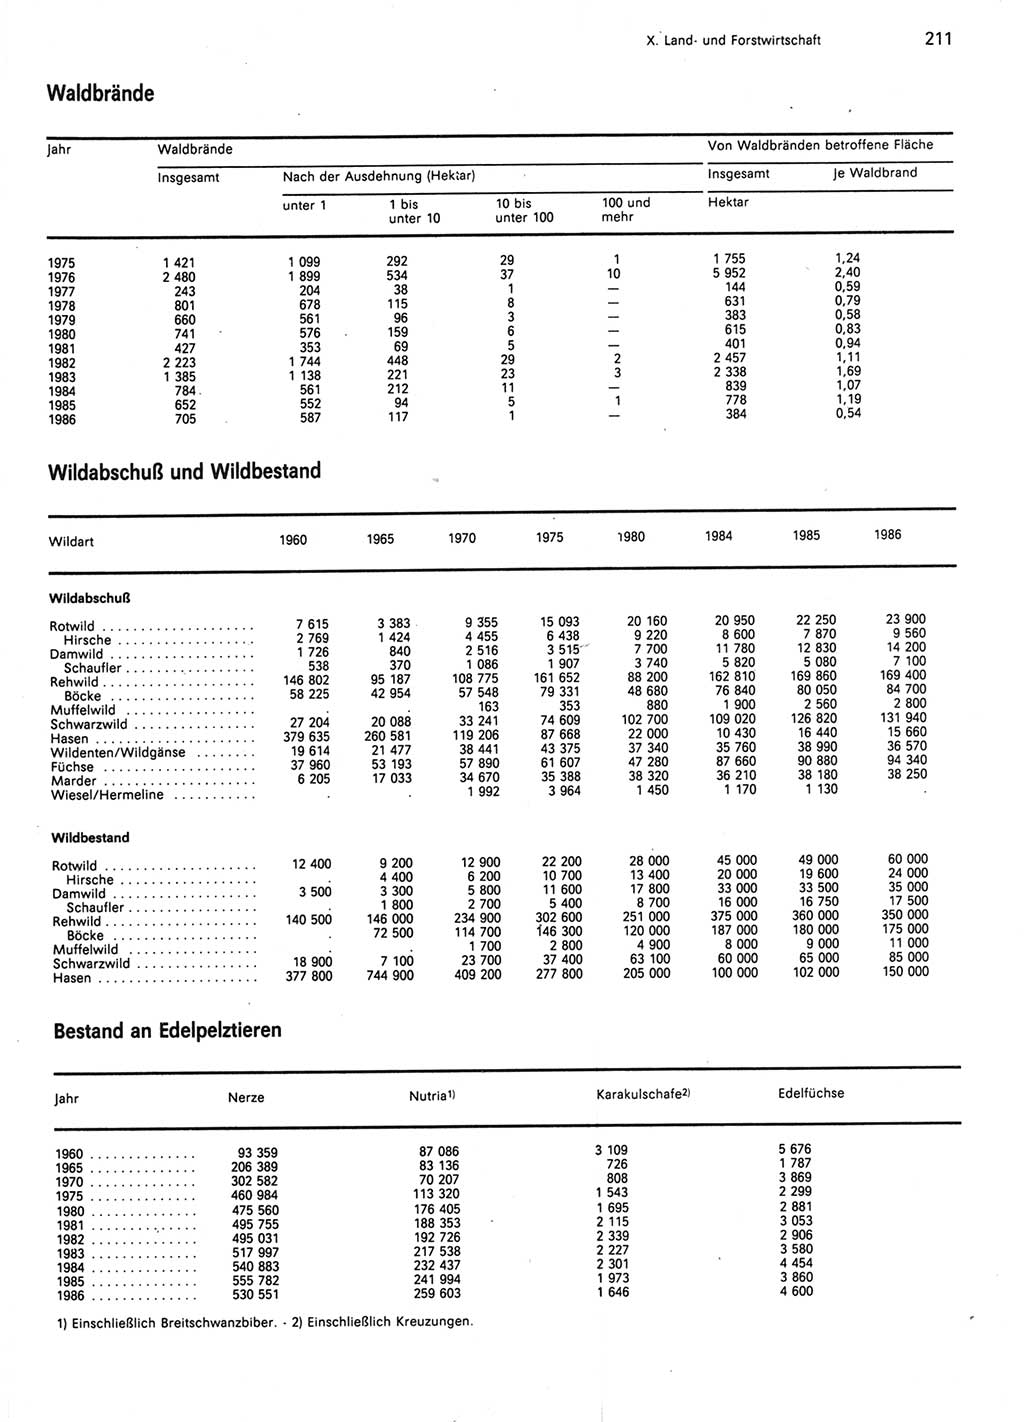 Statistisches Jahrbuch der Deutschen Demokratischen Republik (DDR) 1987, Seite 211 (Stat. Jb. DDR 1987, S. 211)